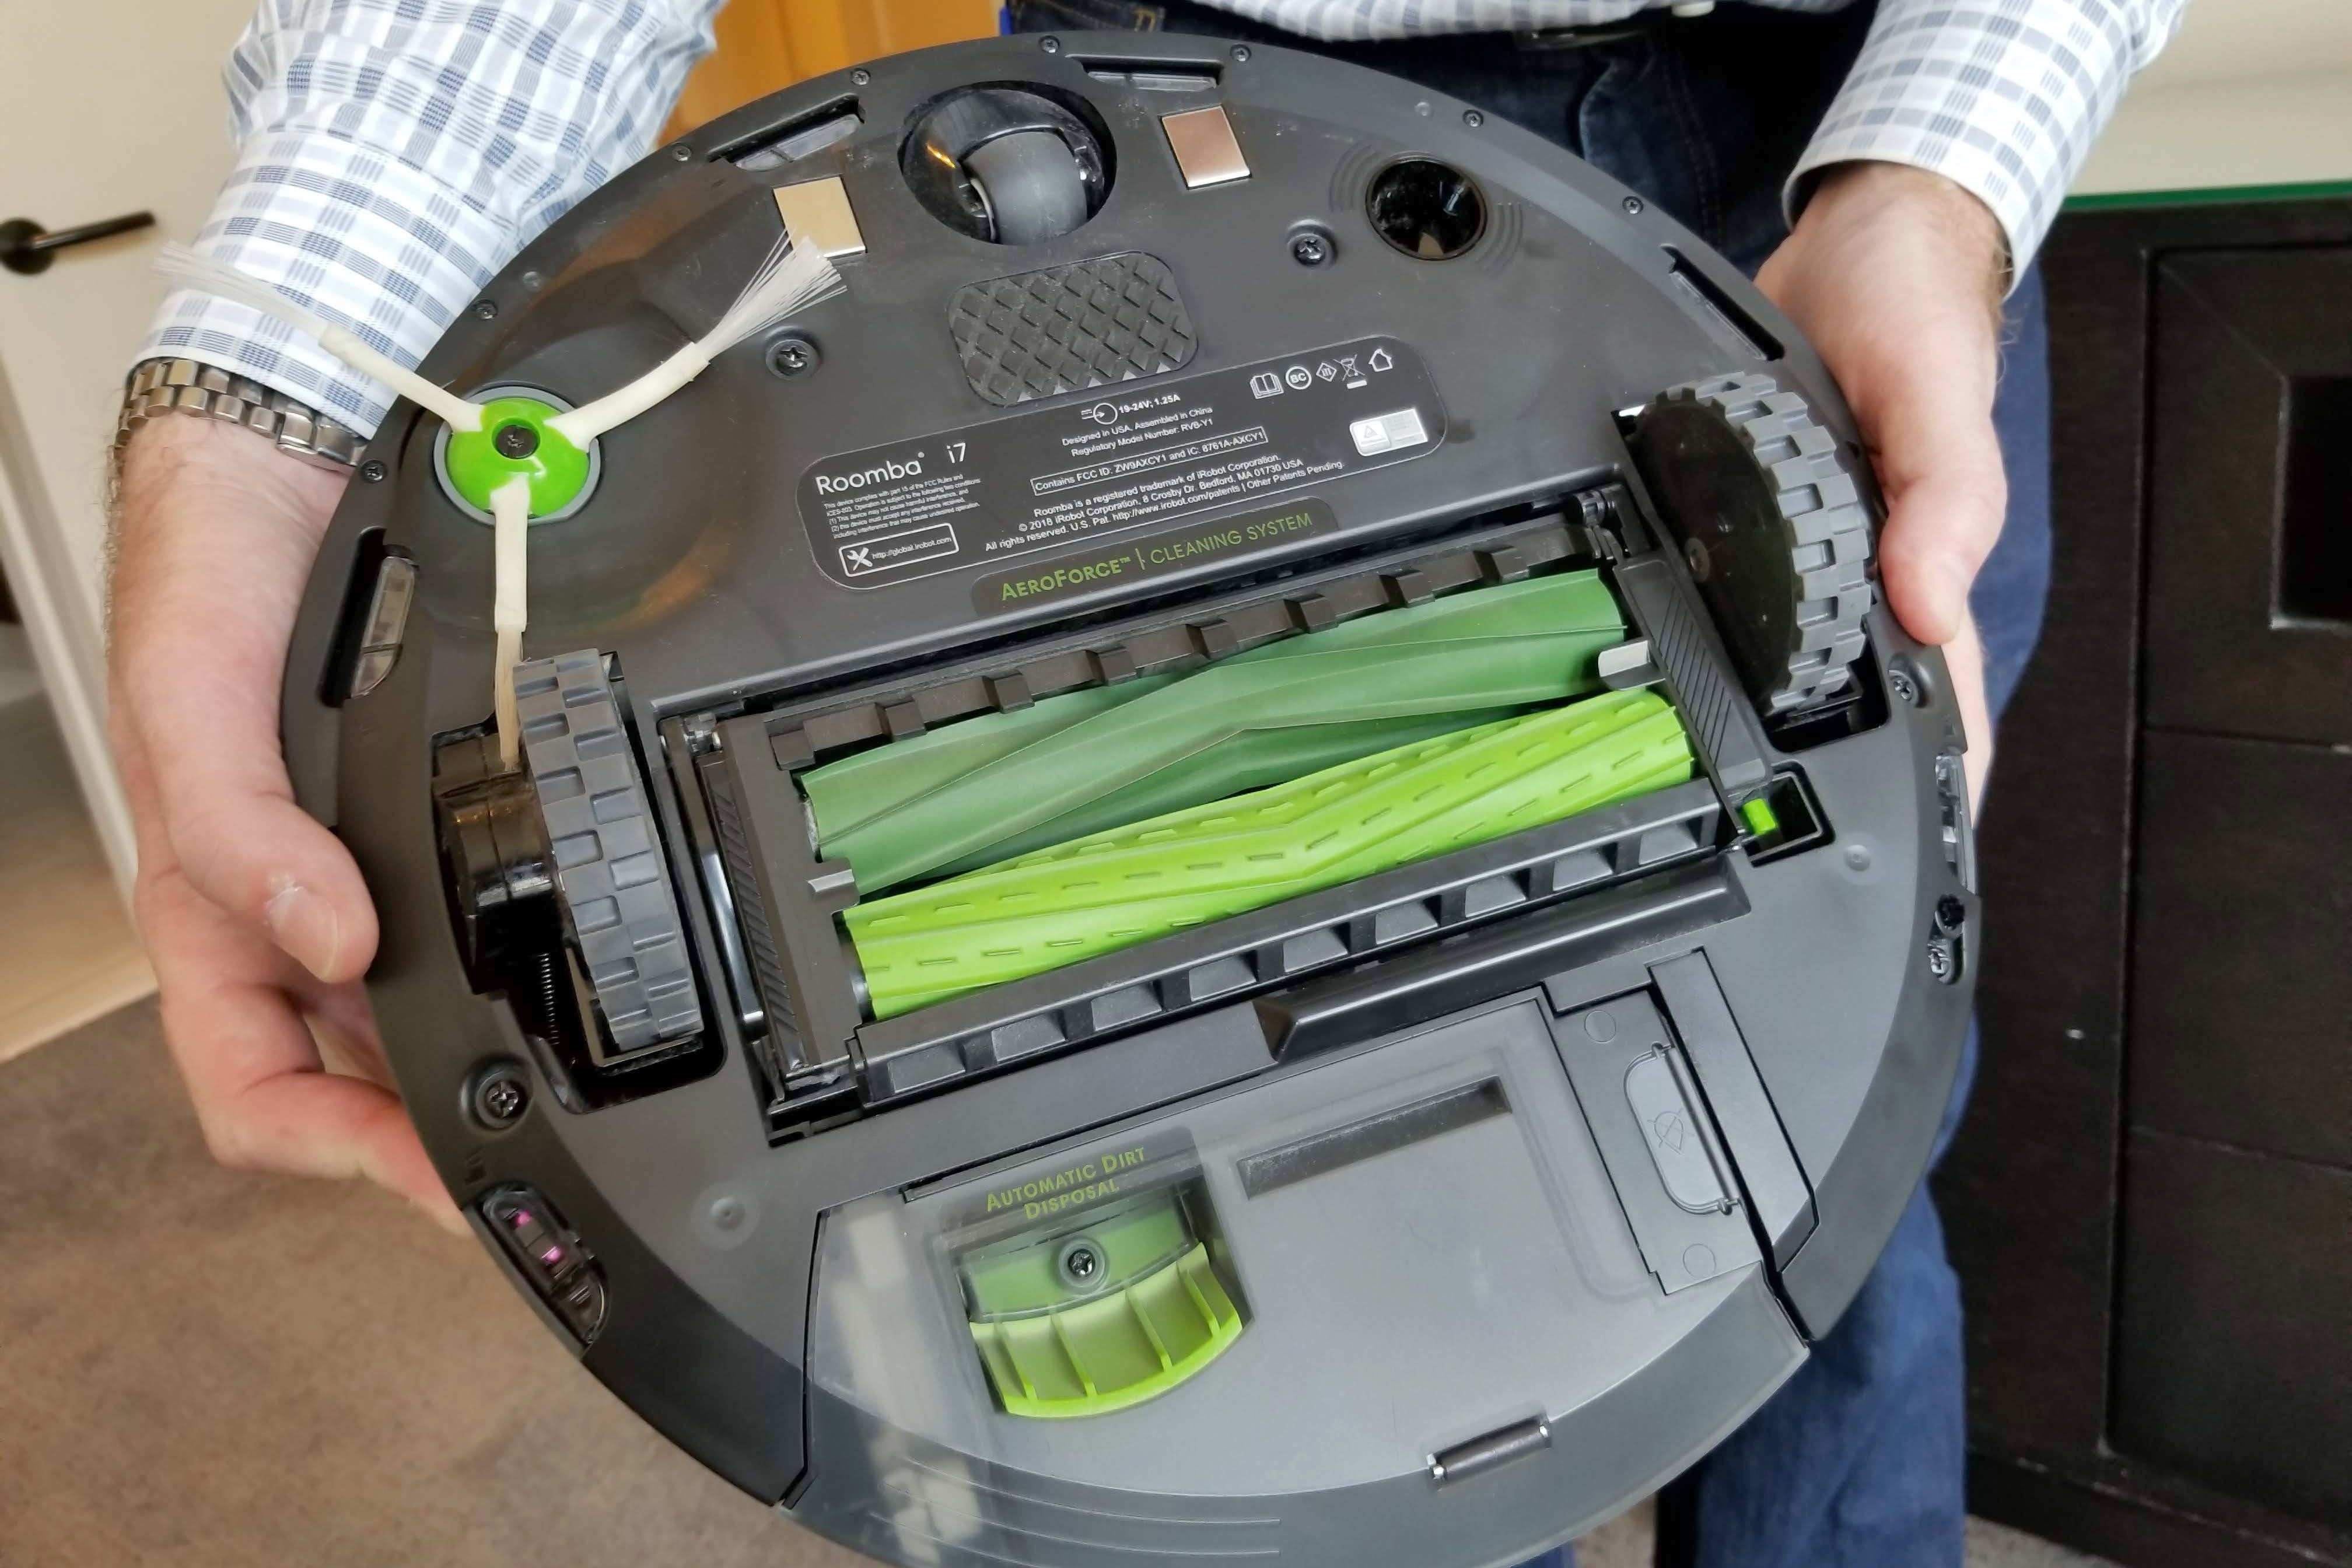 iRobot's Roomba i7+ is so smart it empties its own dirt